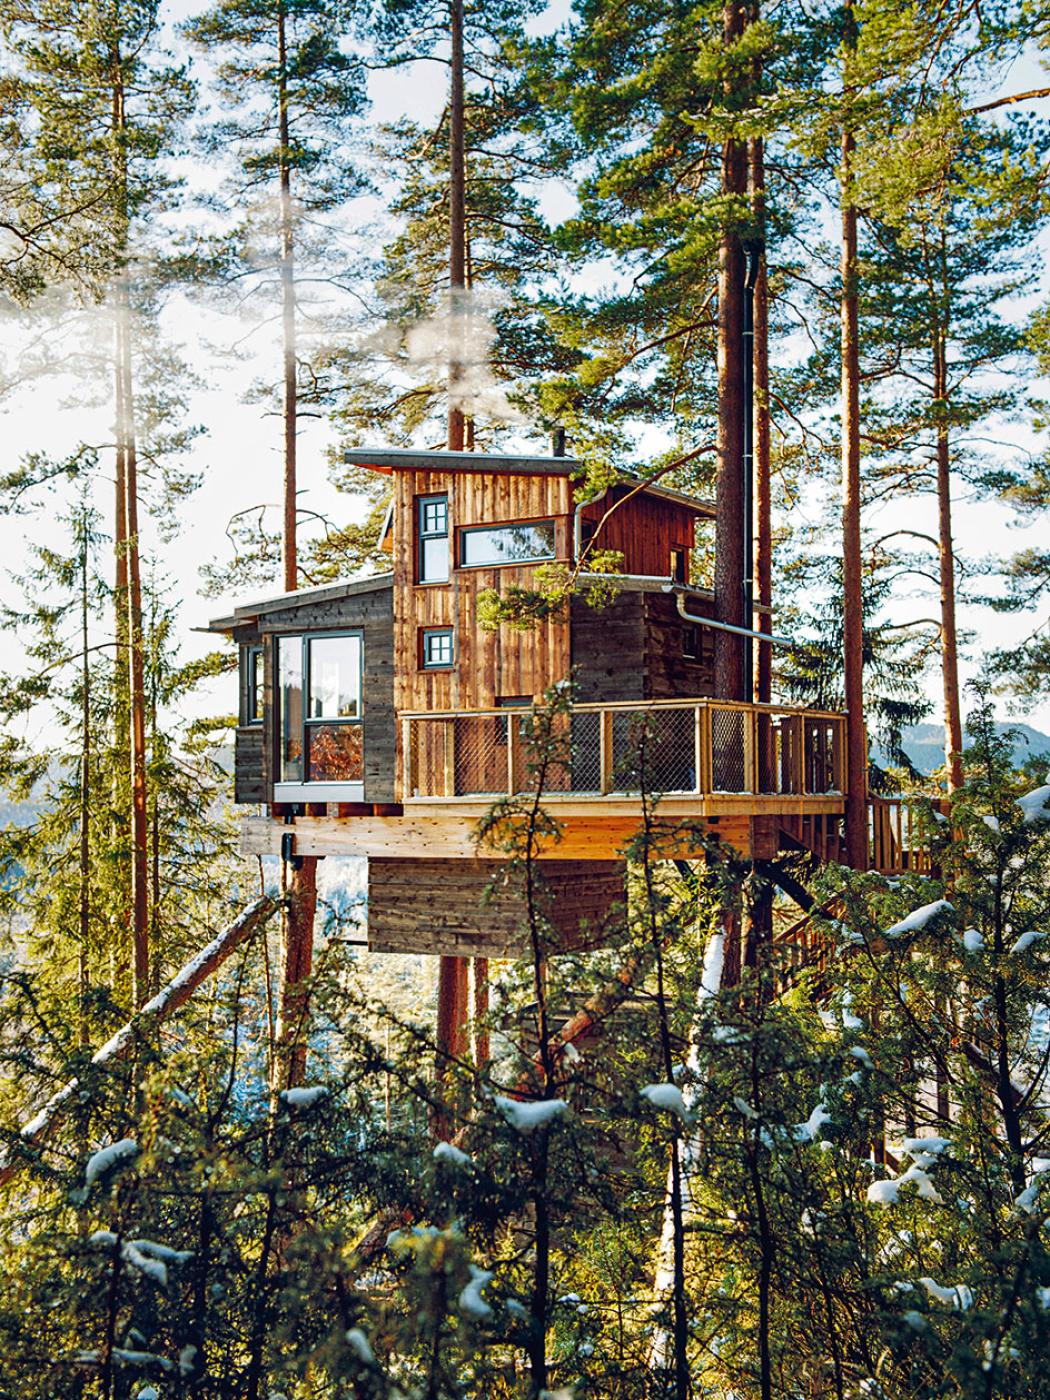 Domek „kukułcze gniazdo”, usytuowany wśród wierzchołków drzew, sześć metrów nad ziemią. Gjerstad, południowa Norwegia. (Fot. z książki „Cabin Porn. Wnętrza”, wyd. Smak Słowa)